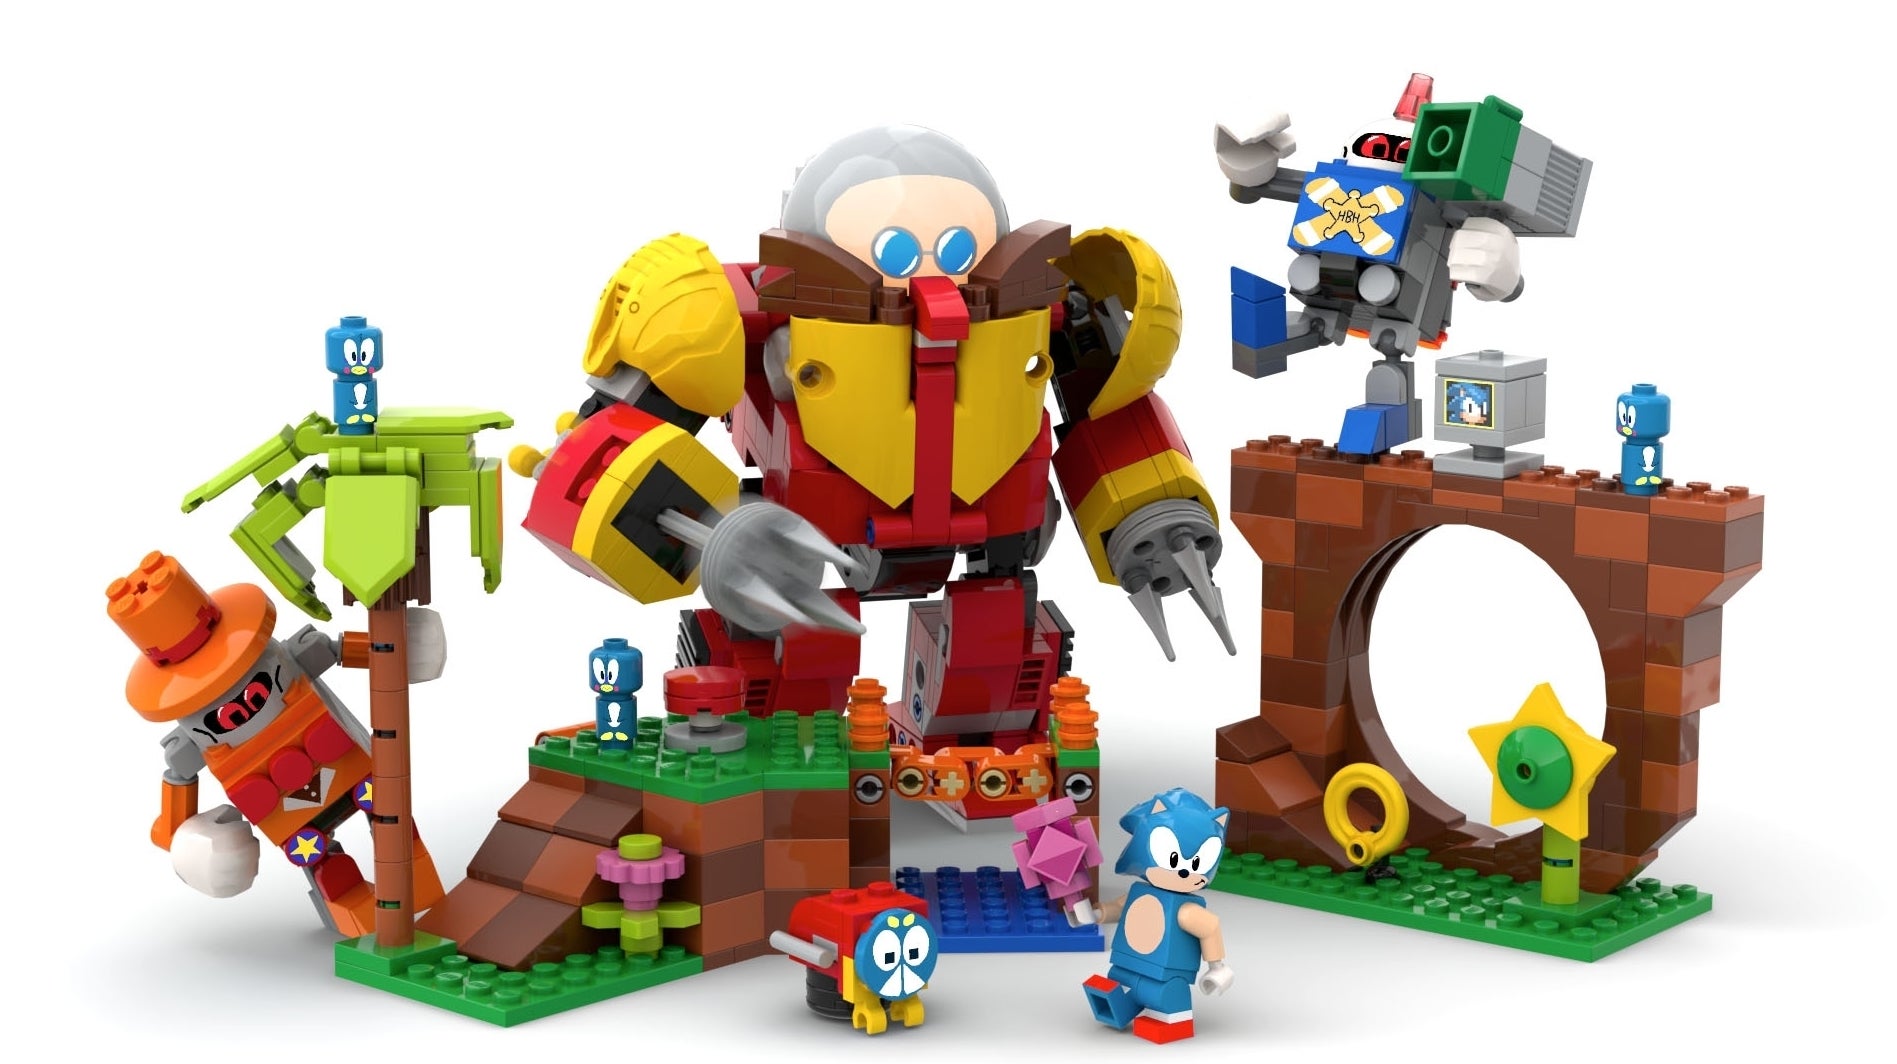 Afbeeldingen van Sonic the Hedgehog LEGO-set aangekondigd